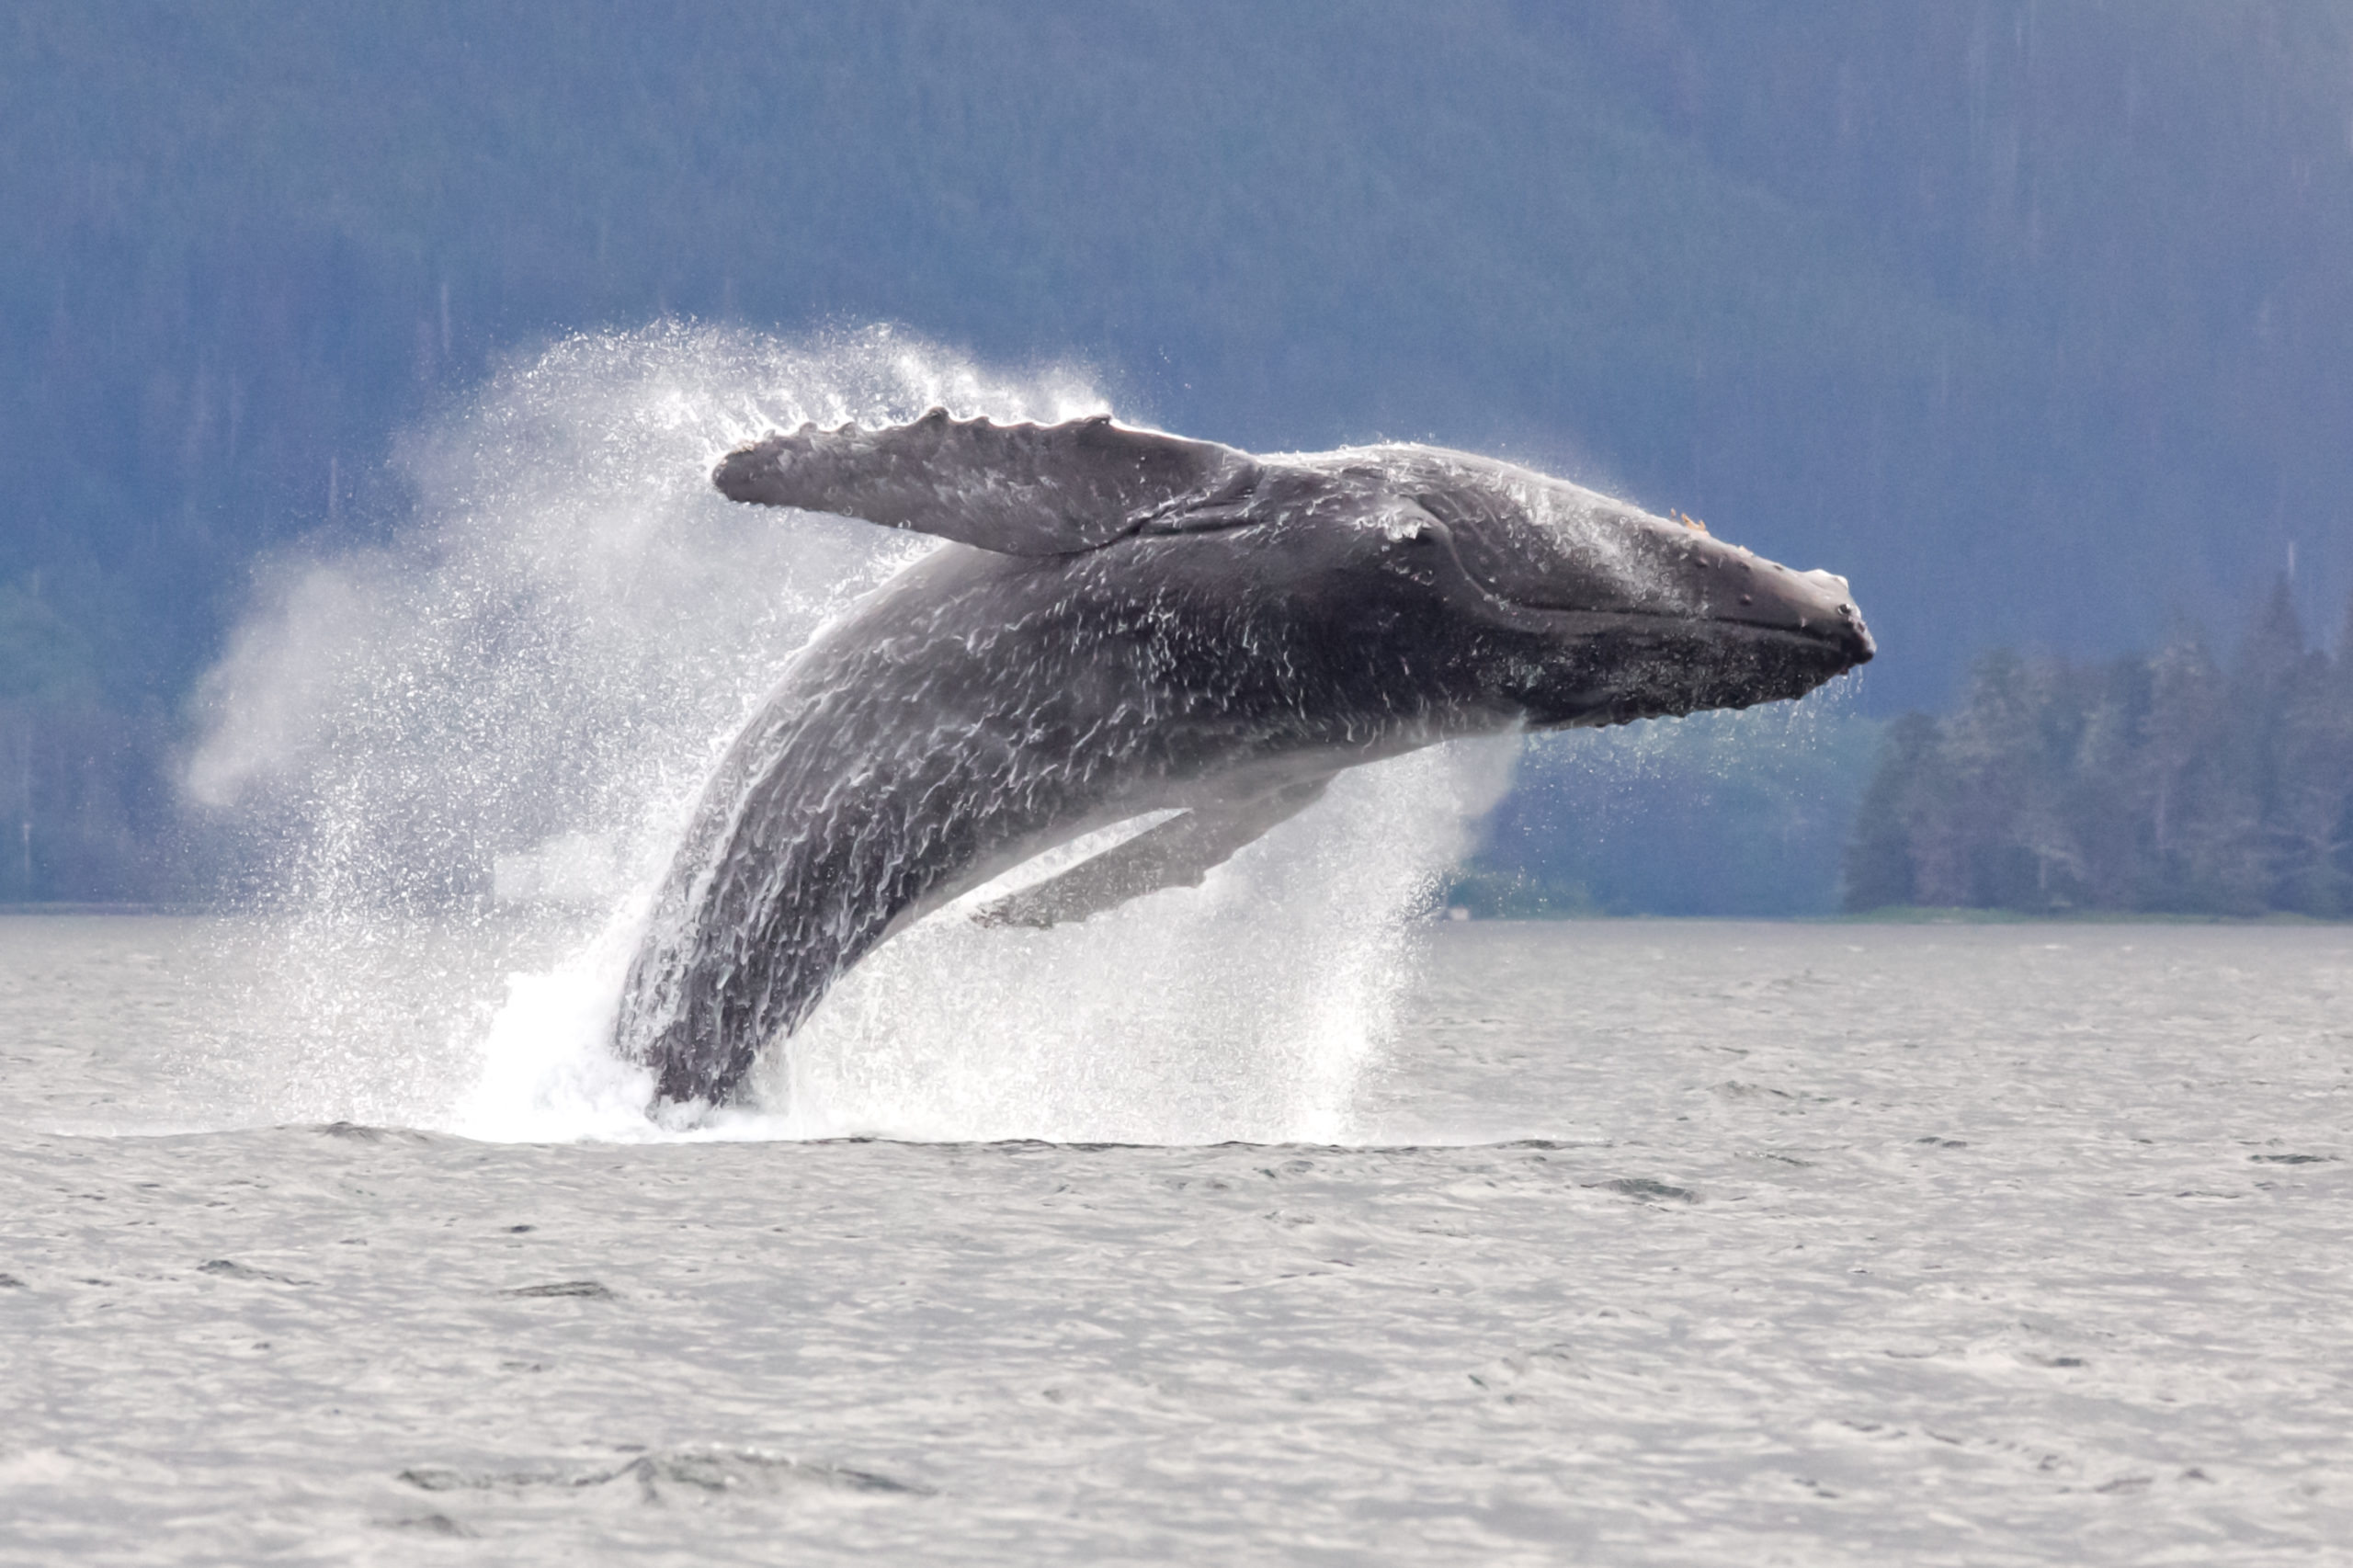 Breaching whale, marine mammal